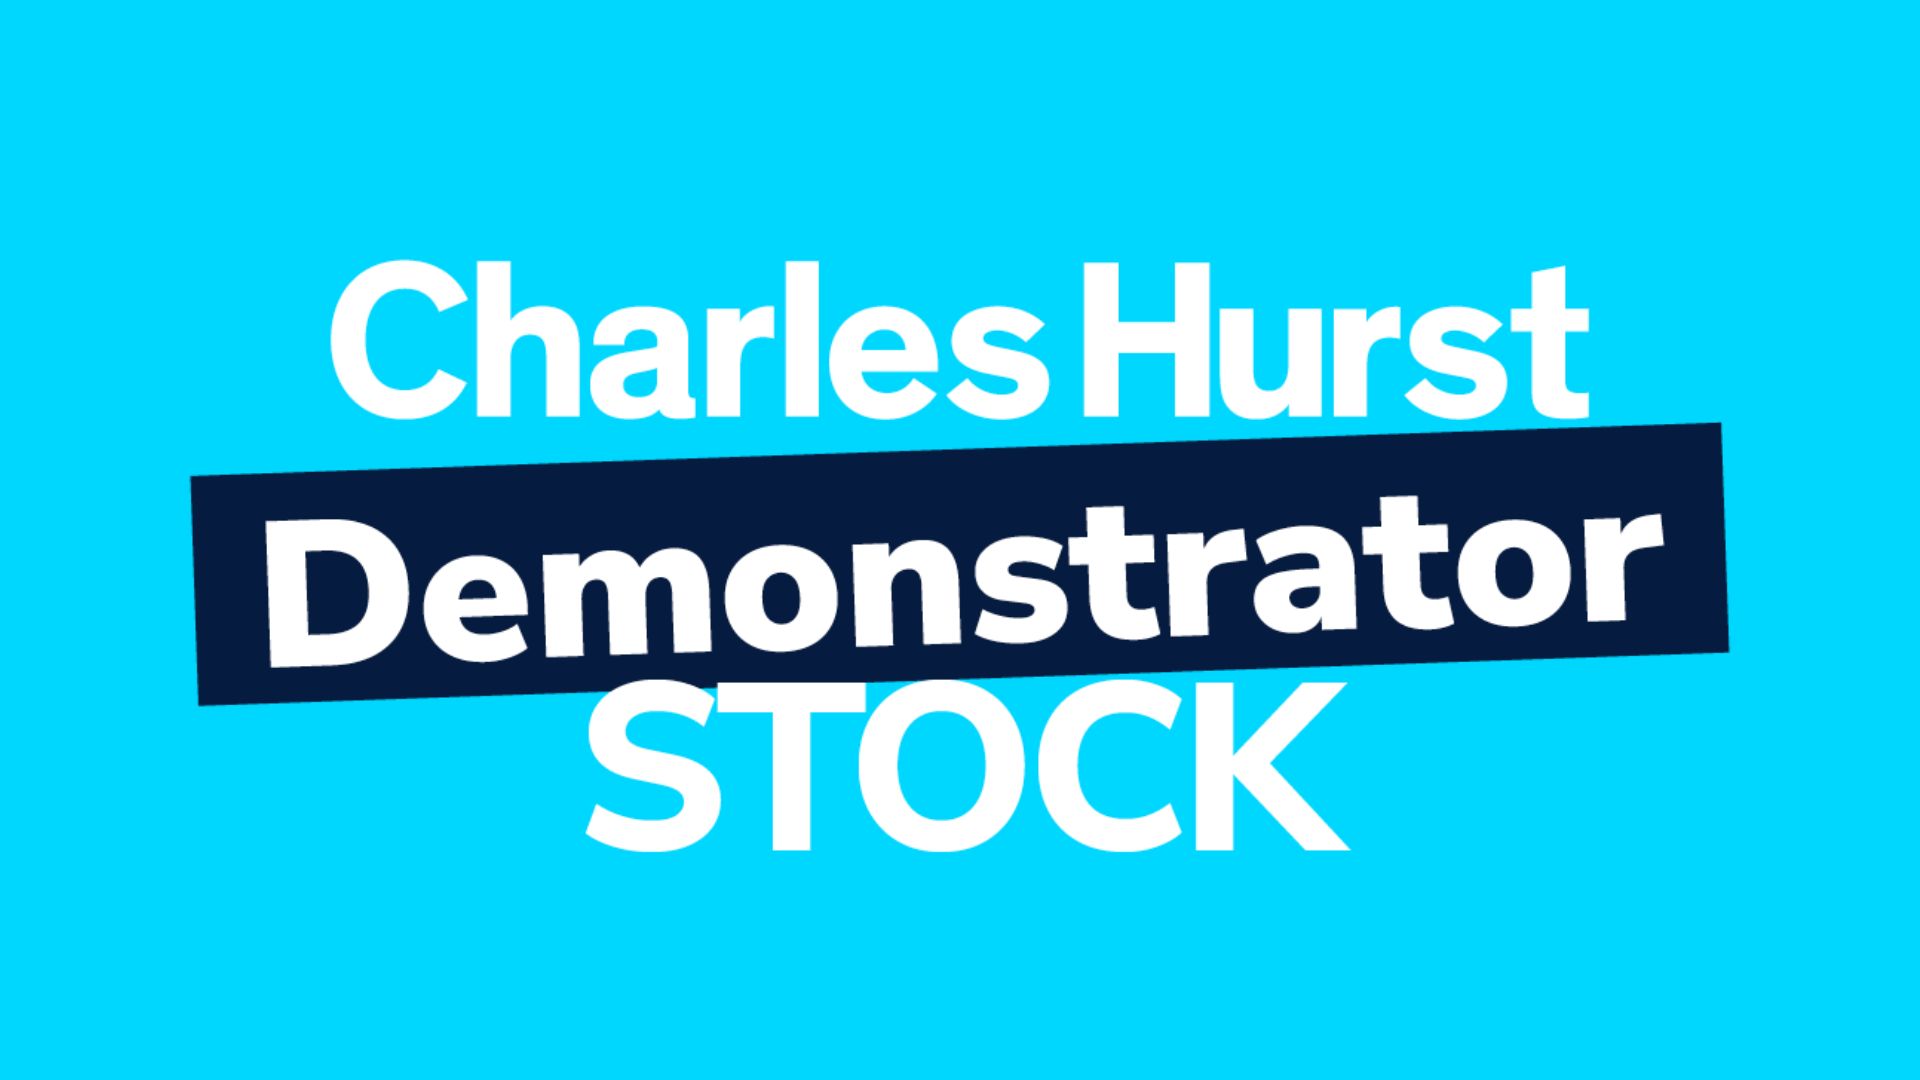 Charles Hurst Demonstrator Stock Available now